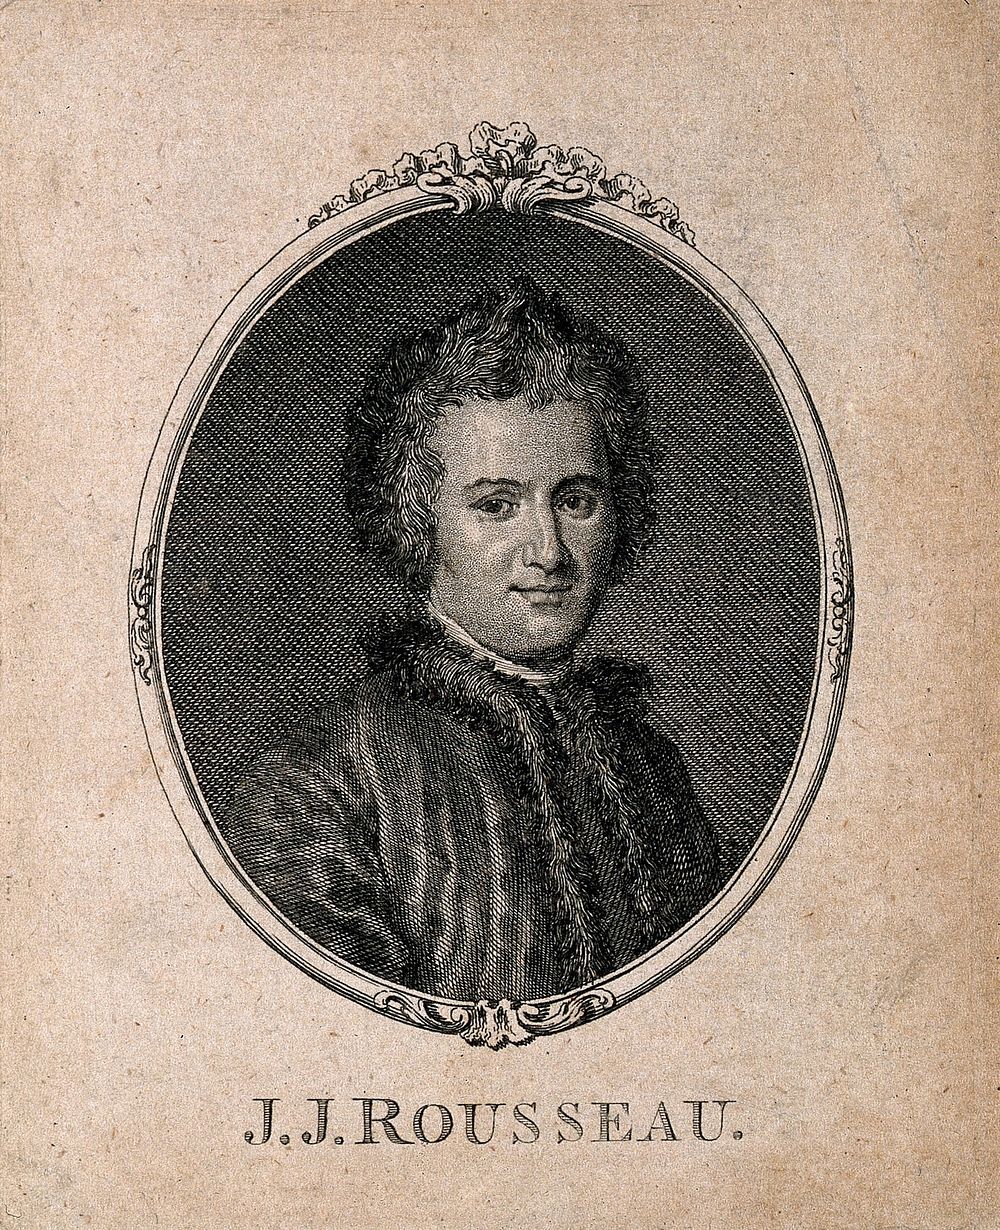 Jean-Jacques Rousseau. Engraving.